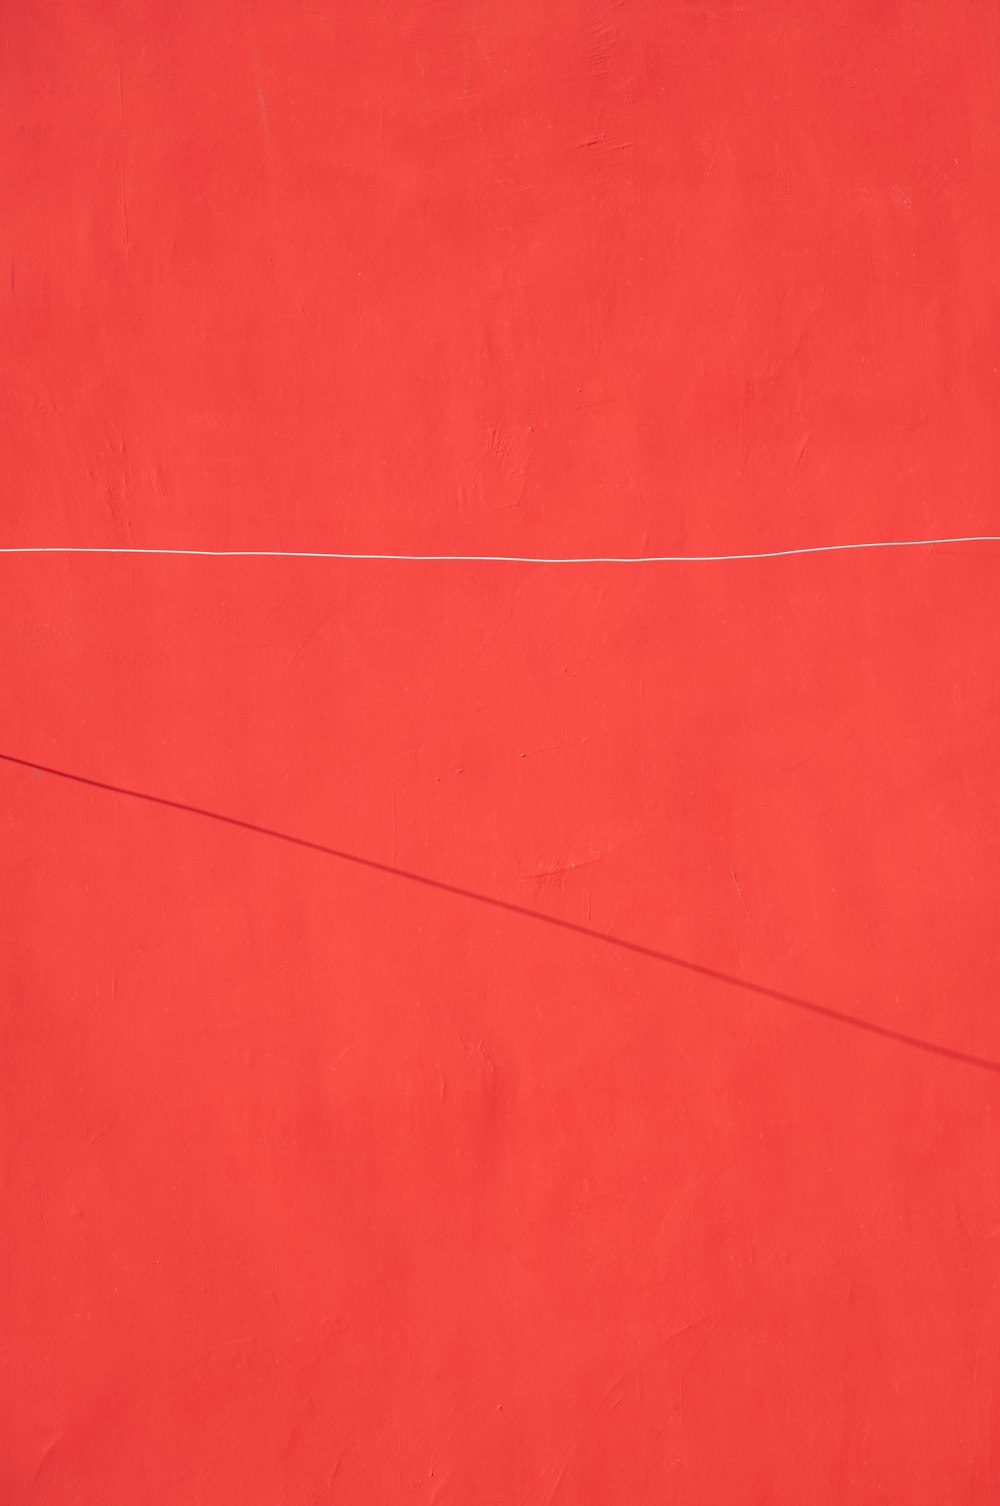 un muro rosso con una linea bianca su di esso